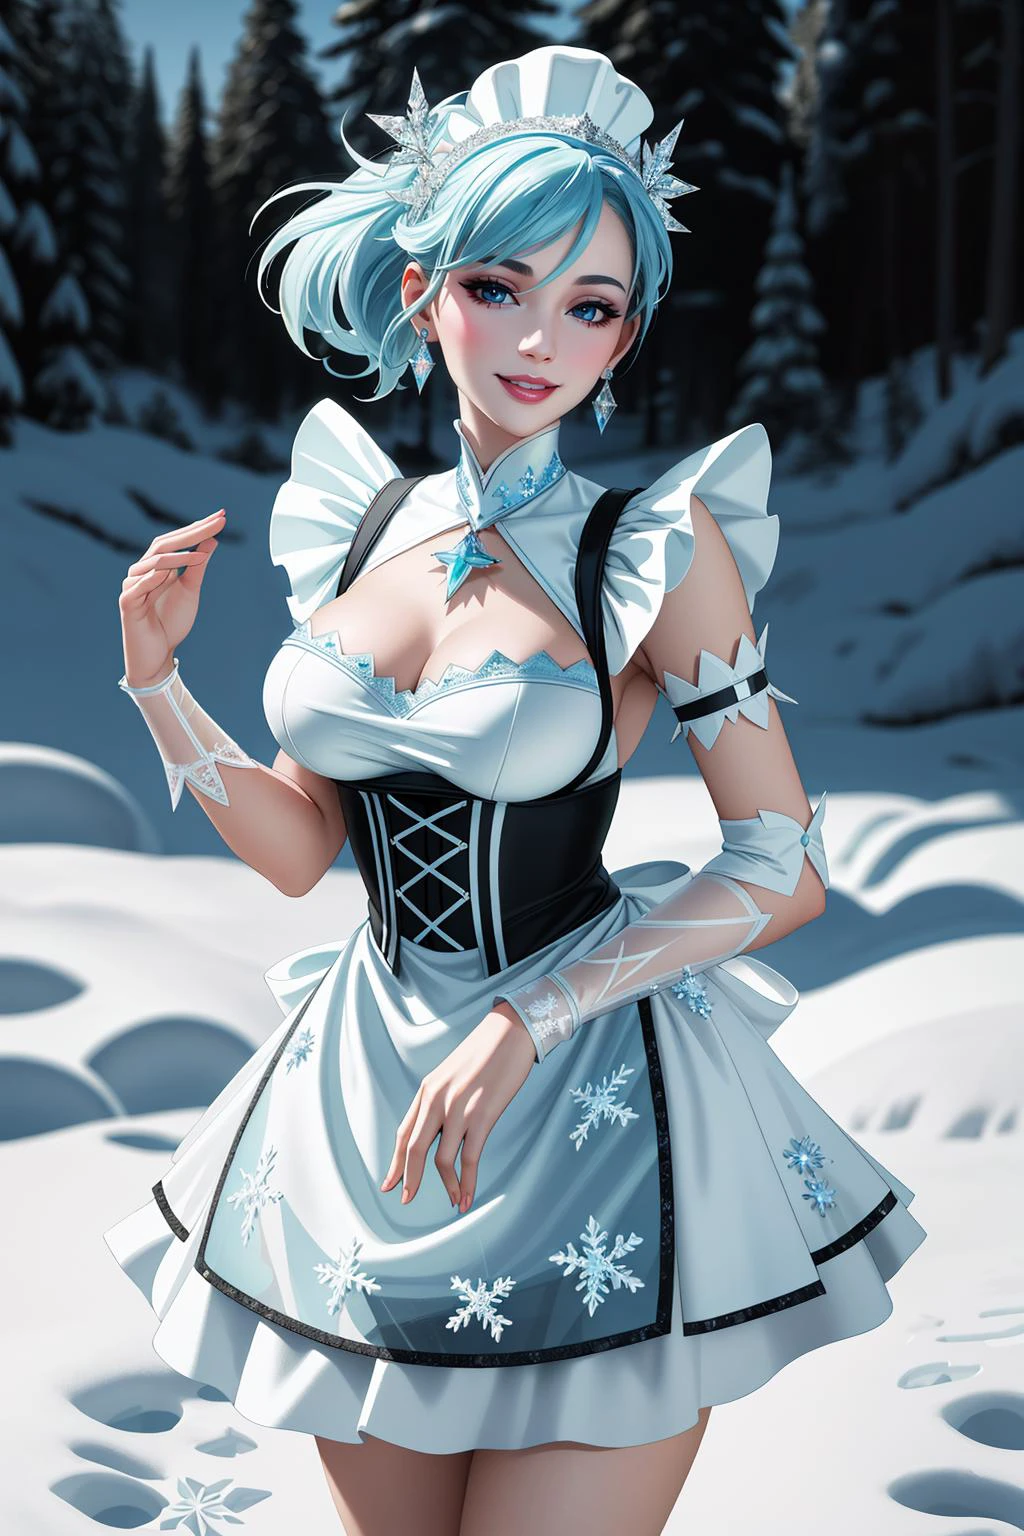 ((Meisterwerk, beste Qualität,edgQualität)),lächelnd,Stehen,für ein Foto posieren,
edgSchürze, edgEis, Frau in einer Schürze,Eis,Schneeflocken ,wearing edgEis edgSchürze
 